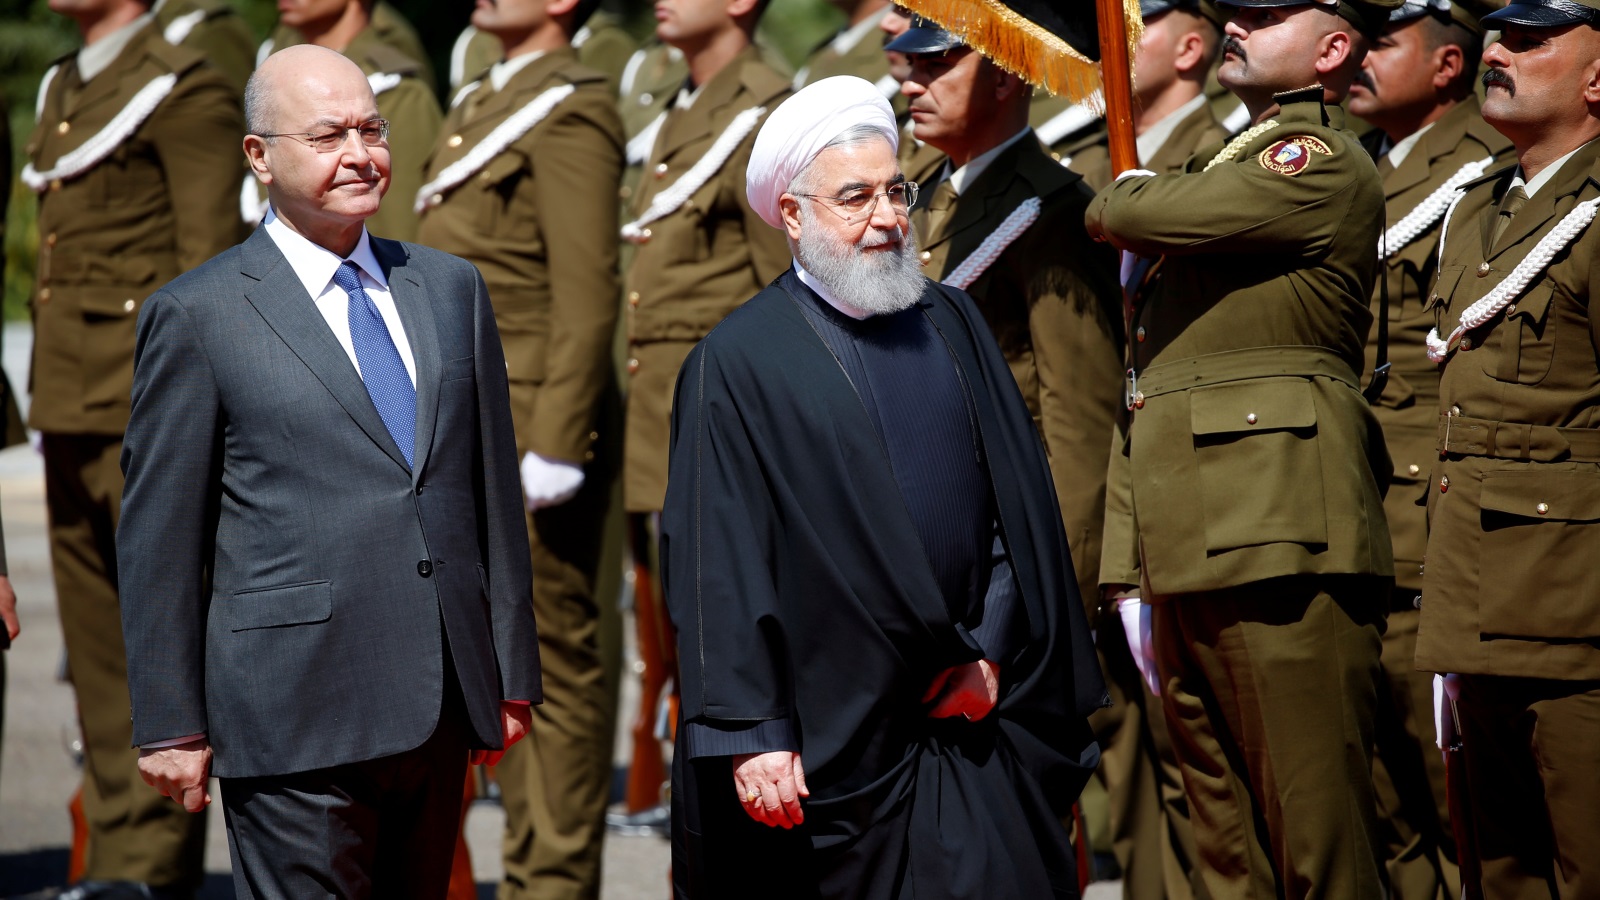 تتطلع إيران إلى بناء وتوطيد العلاقات التجارية مع العراق سريعا، في الوقت الذي بدأت فيه نتائج العقوبات الأميركية بالظهور